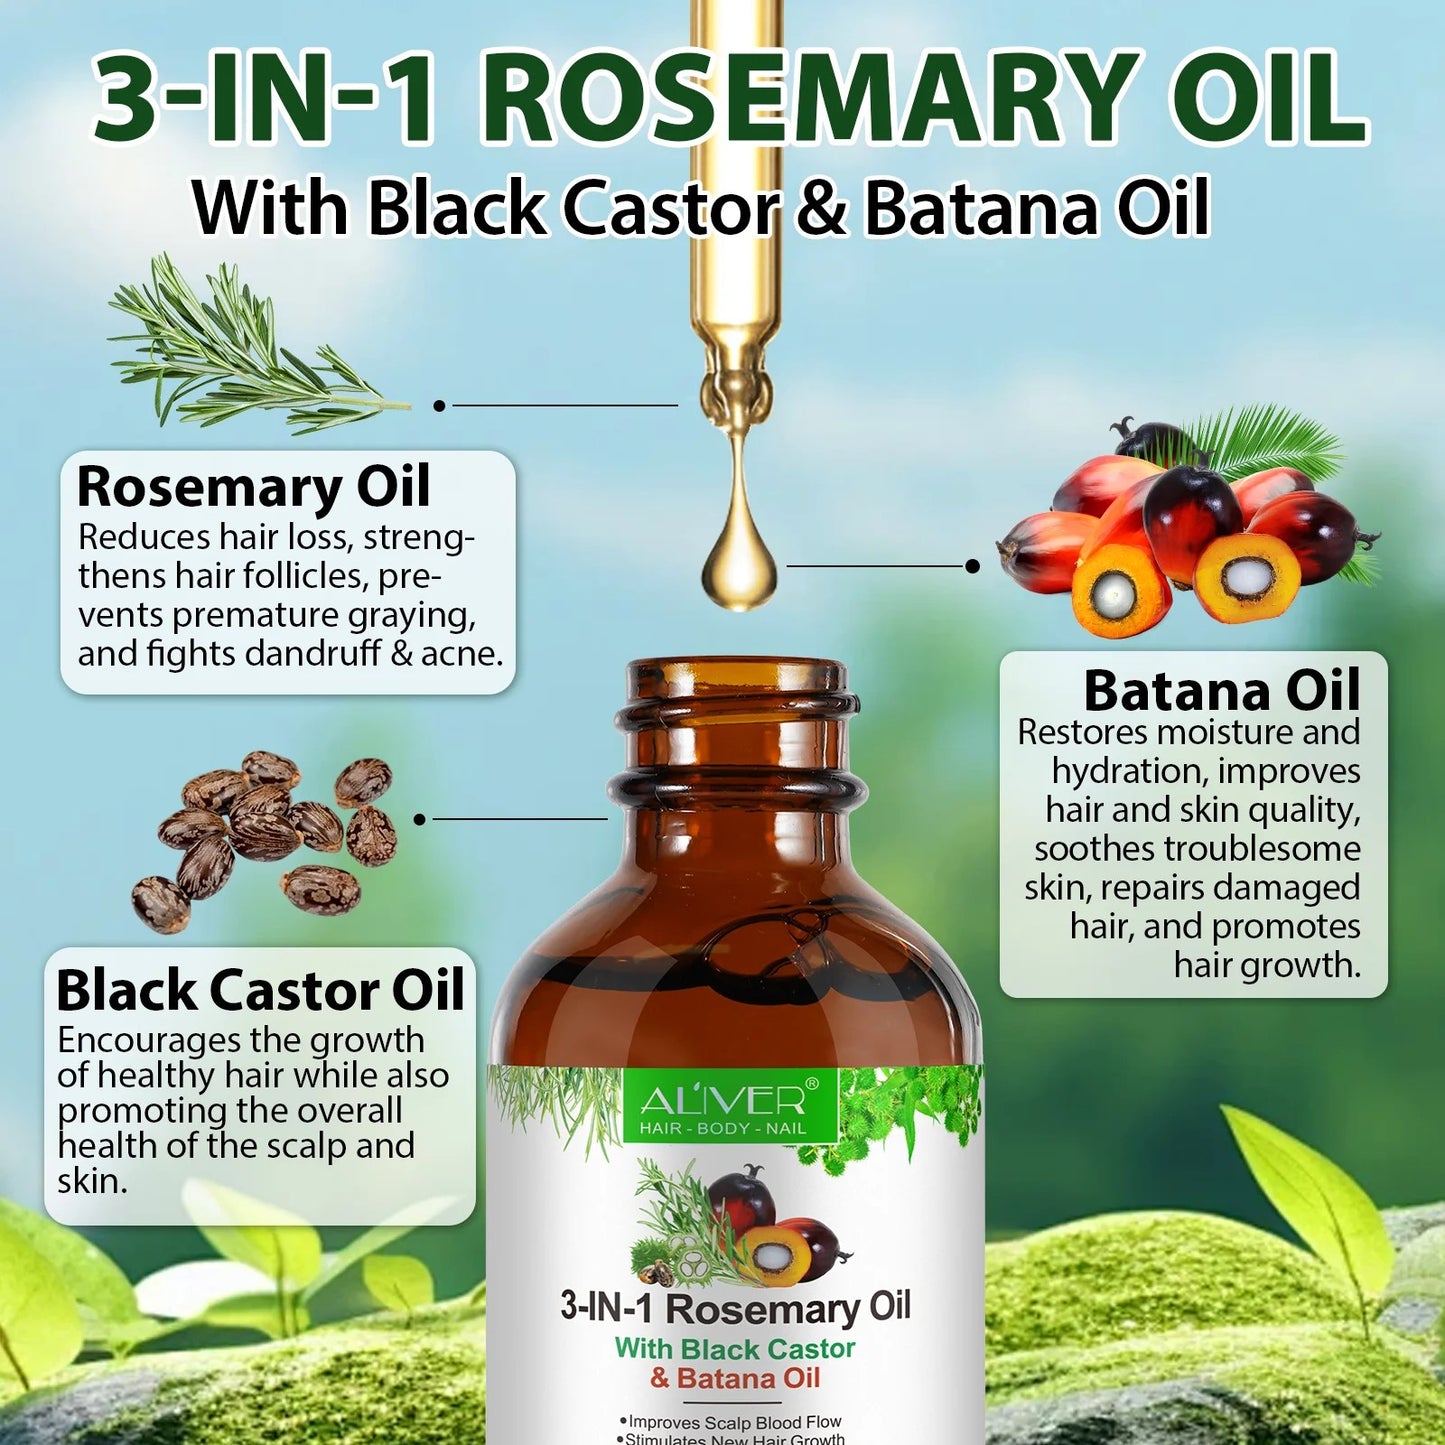 3-in-1 Rosemary Oil with Black Castor & Batana Oil